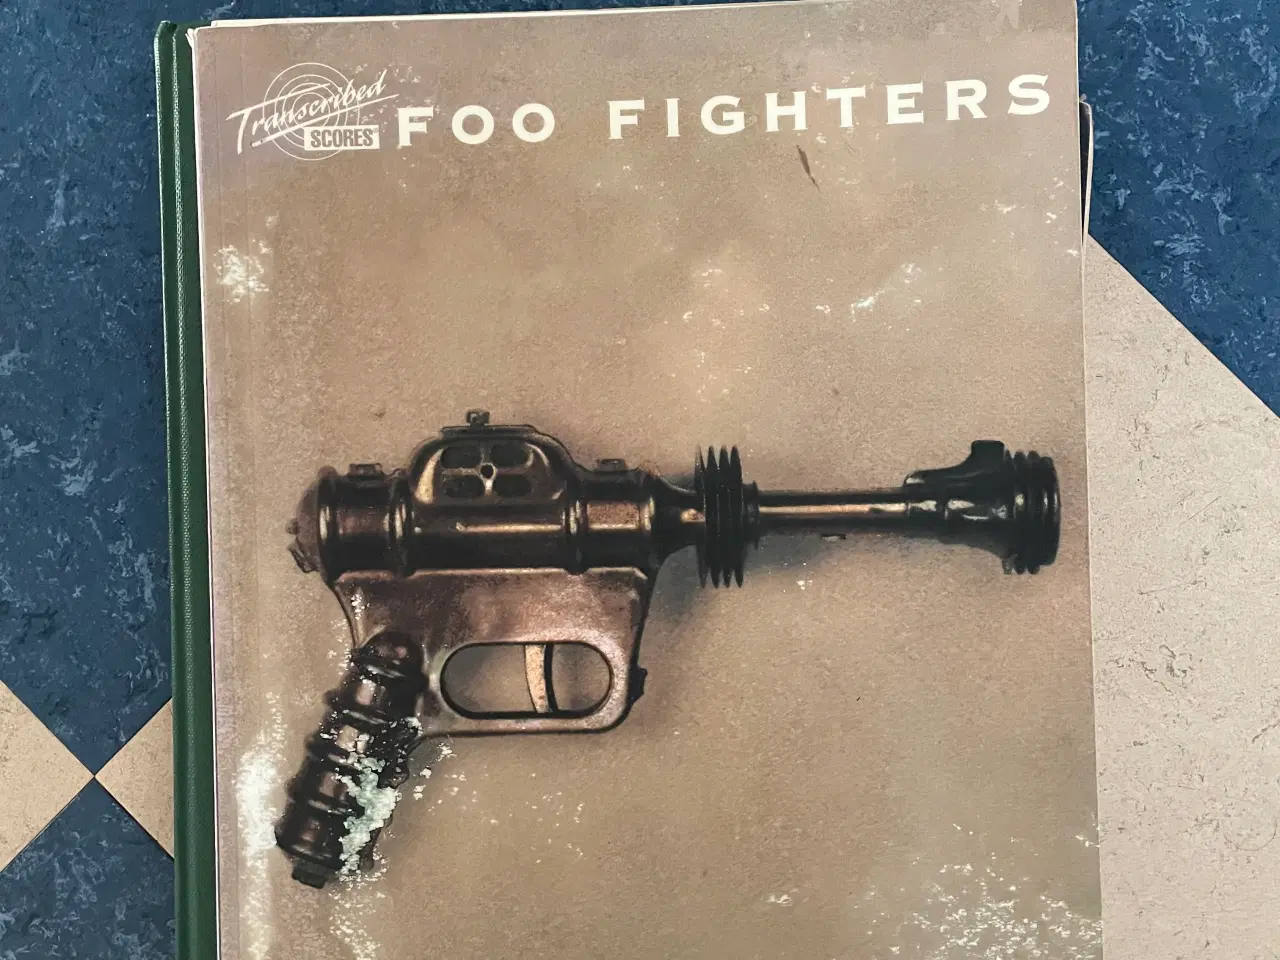 Billede 5 - Foo Fighters noder, se tekst 